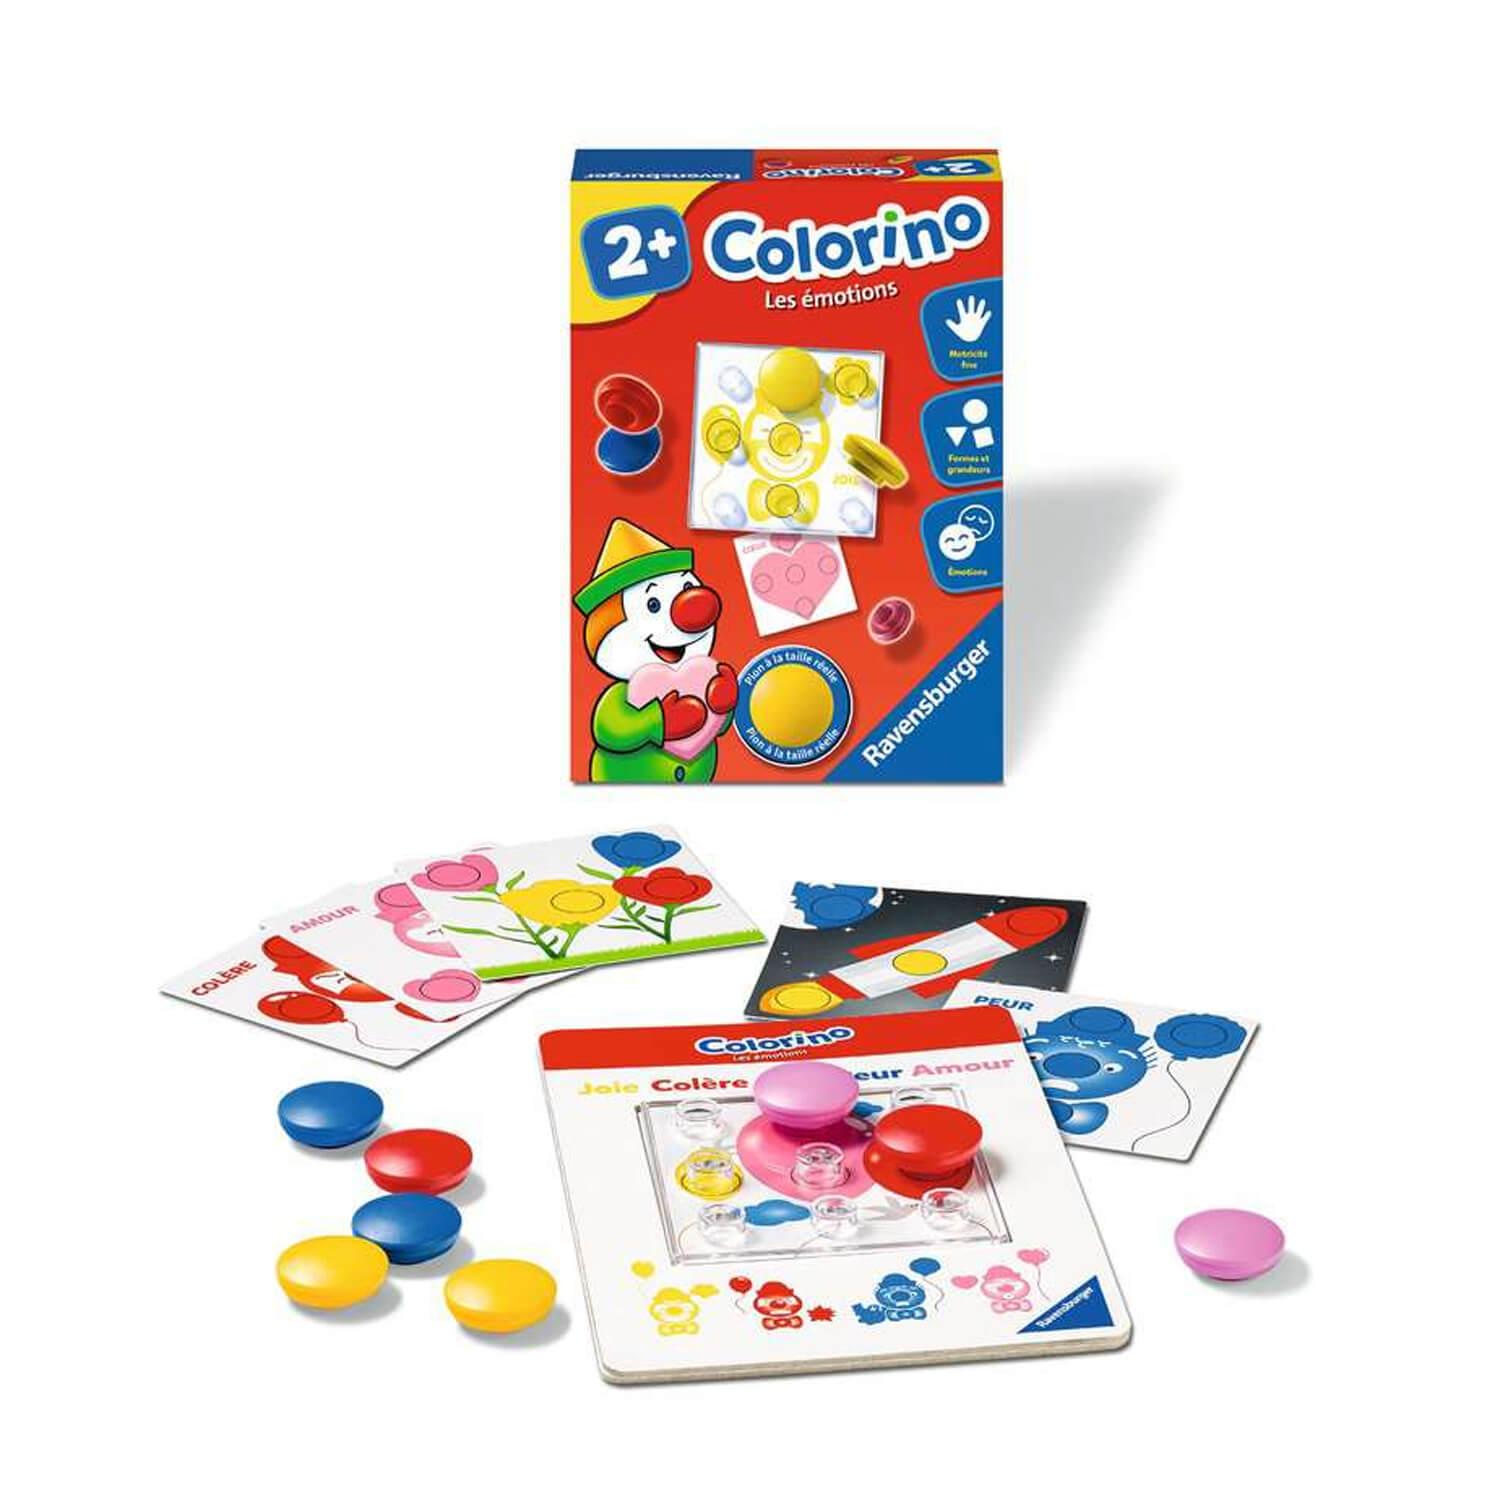 Colorino : Les émotions - Jeux et jouets Ravensburger - Avenue des